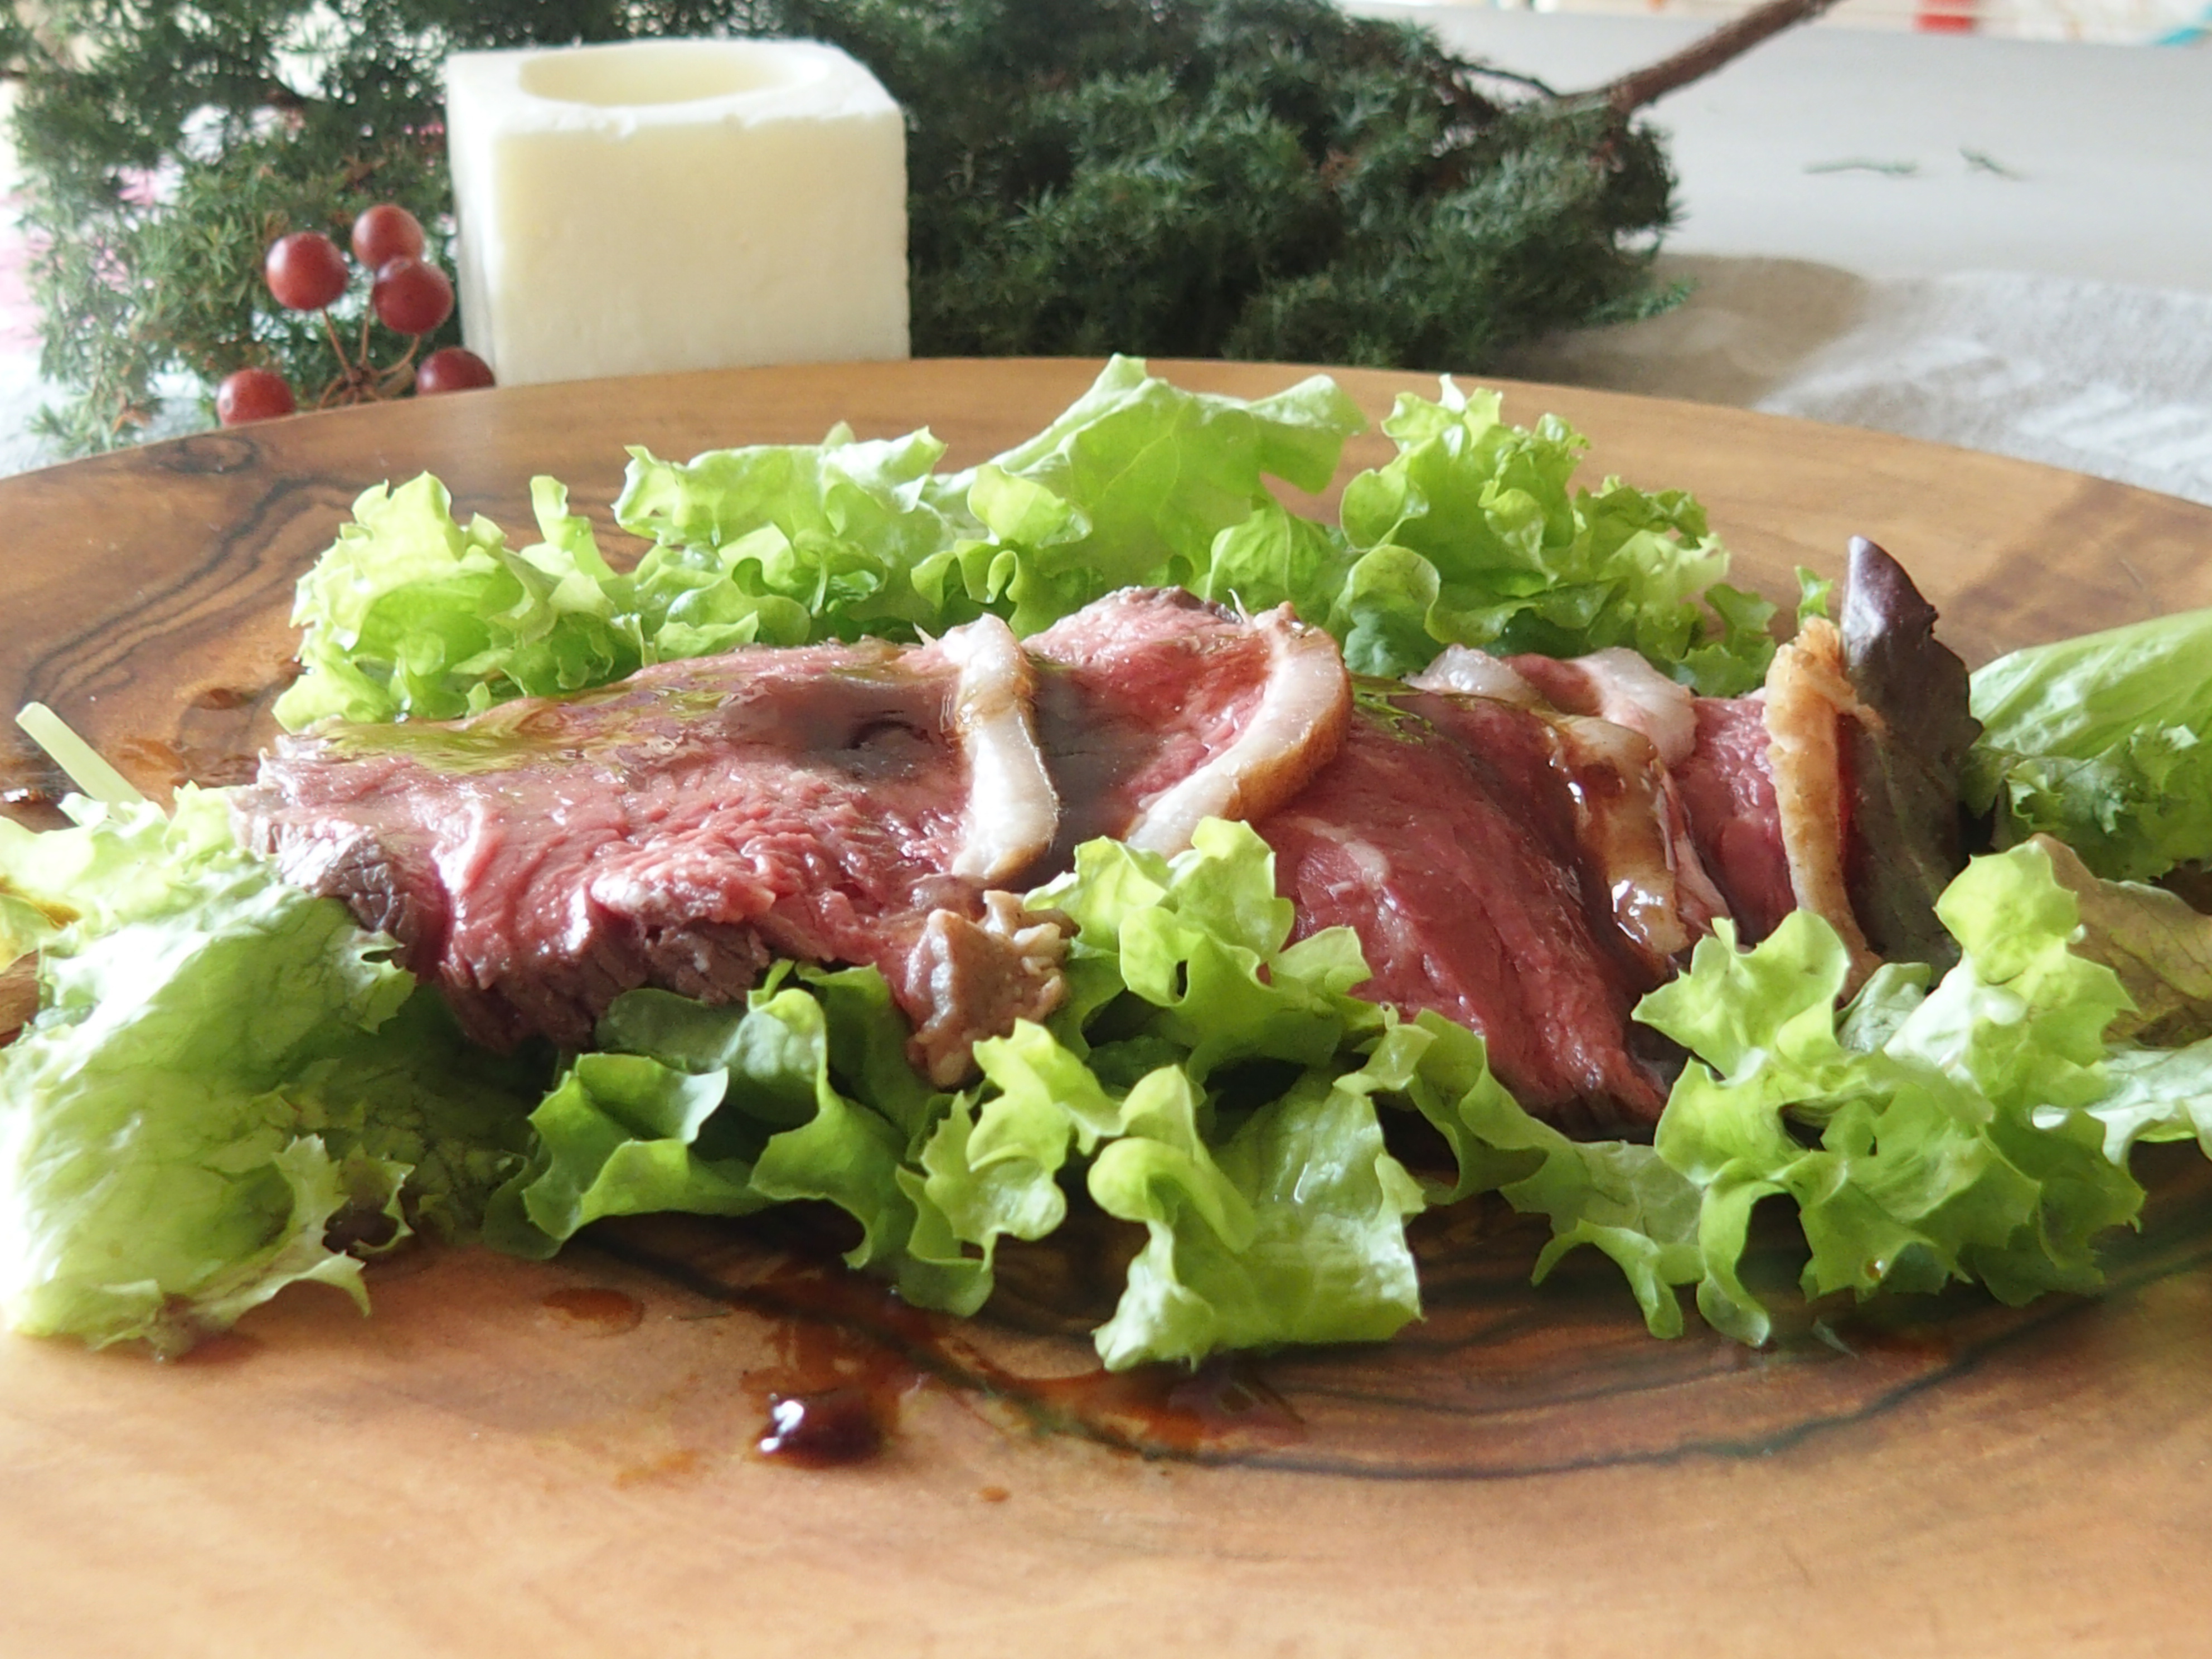 コストコの塊肉でクリスマスはローストビーフ! 簡単な作り方とソース3種